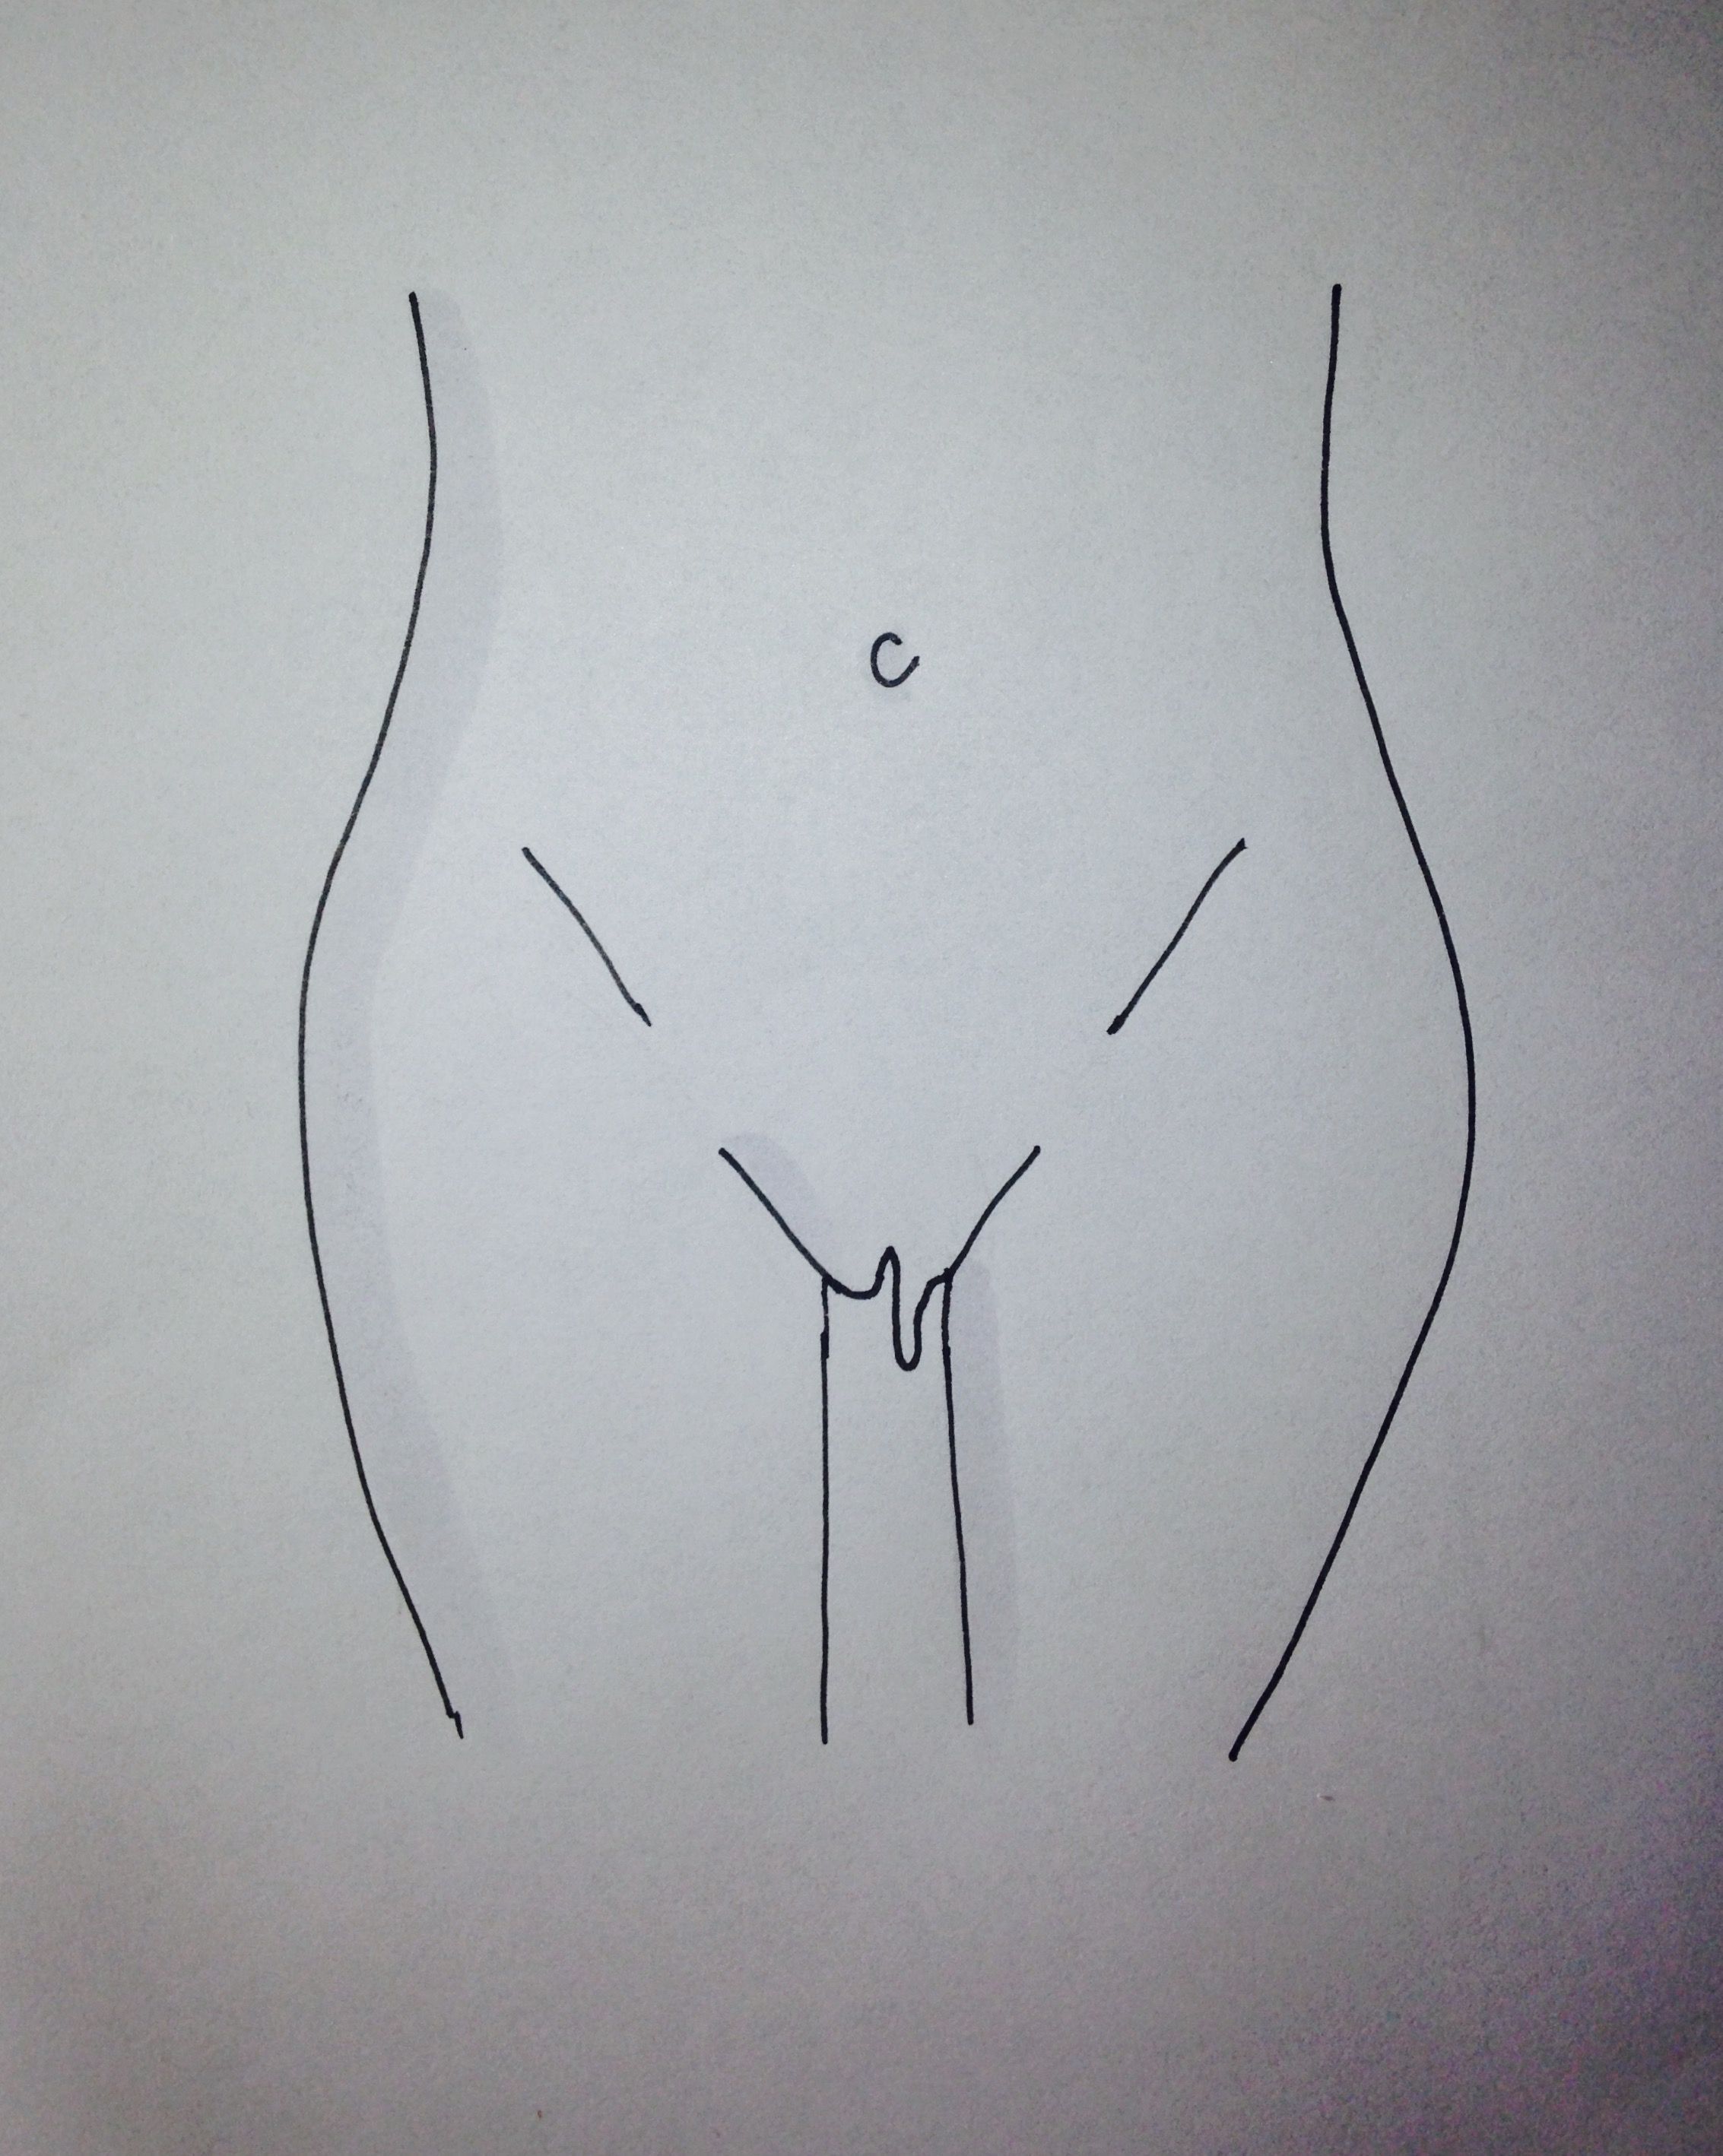 Different looking vulva